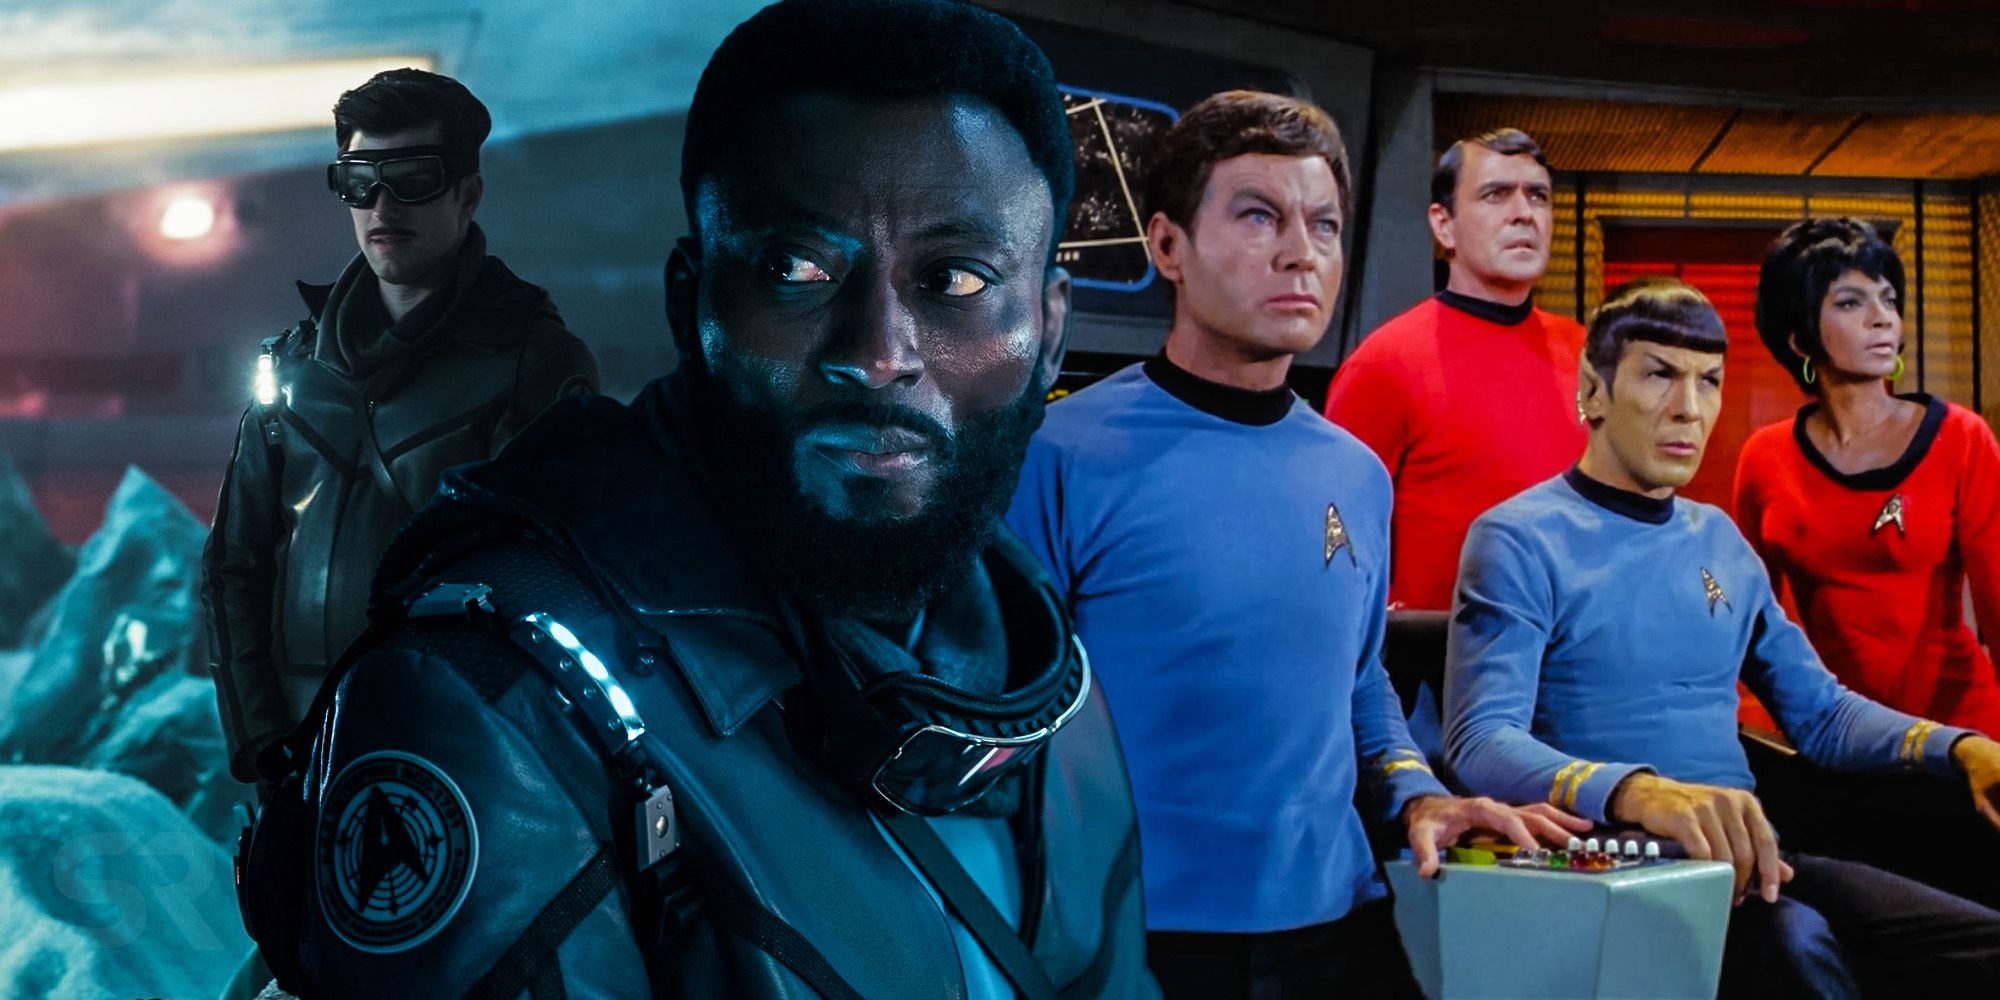 Star trek strange new worlds Set Up Spock &amp; Bones Best Star Trek Line